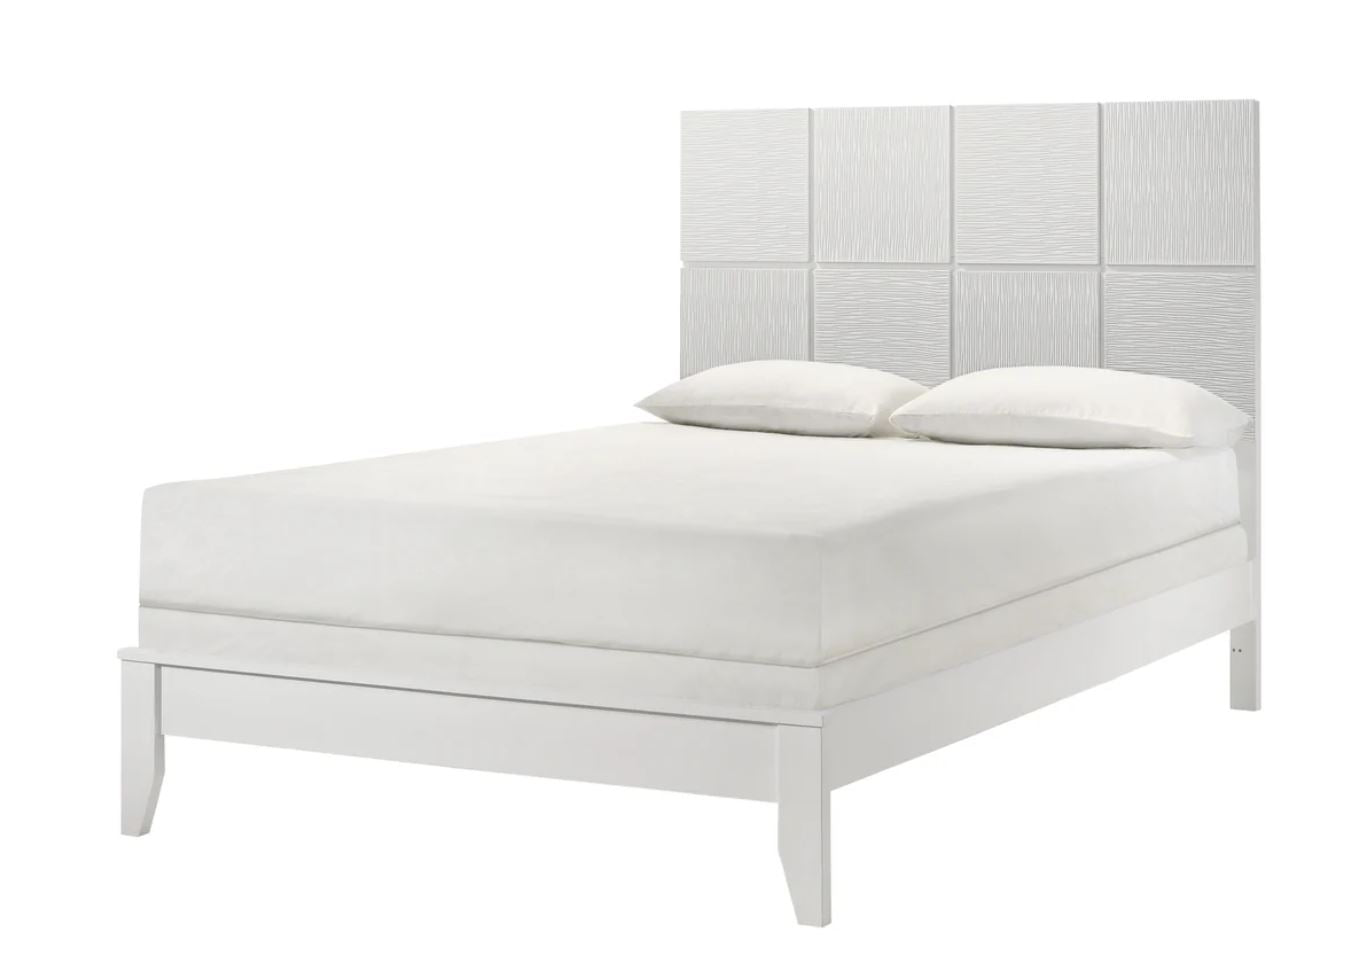 Denker Modern White Panel 5 Piece Queen Bedroom Set